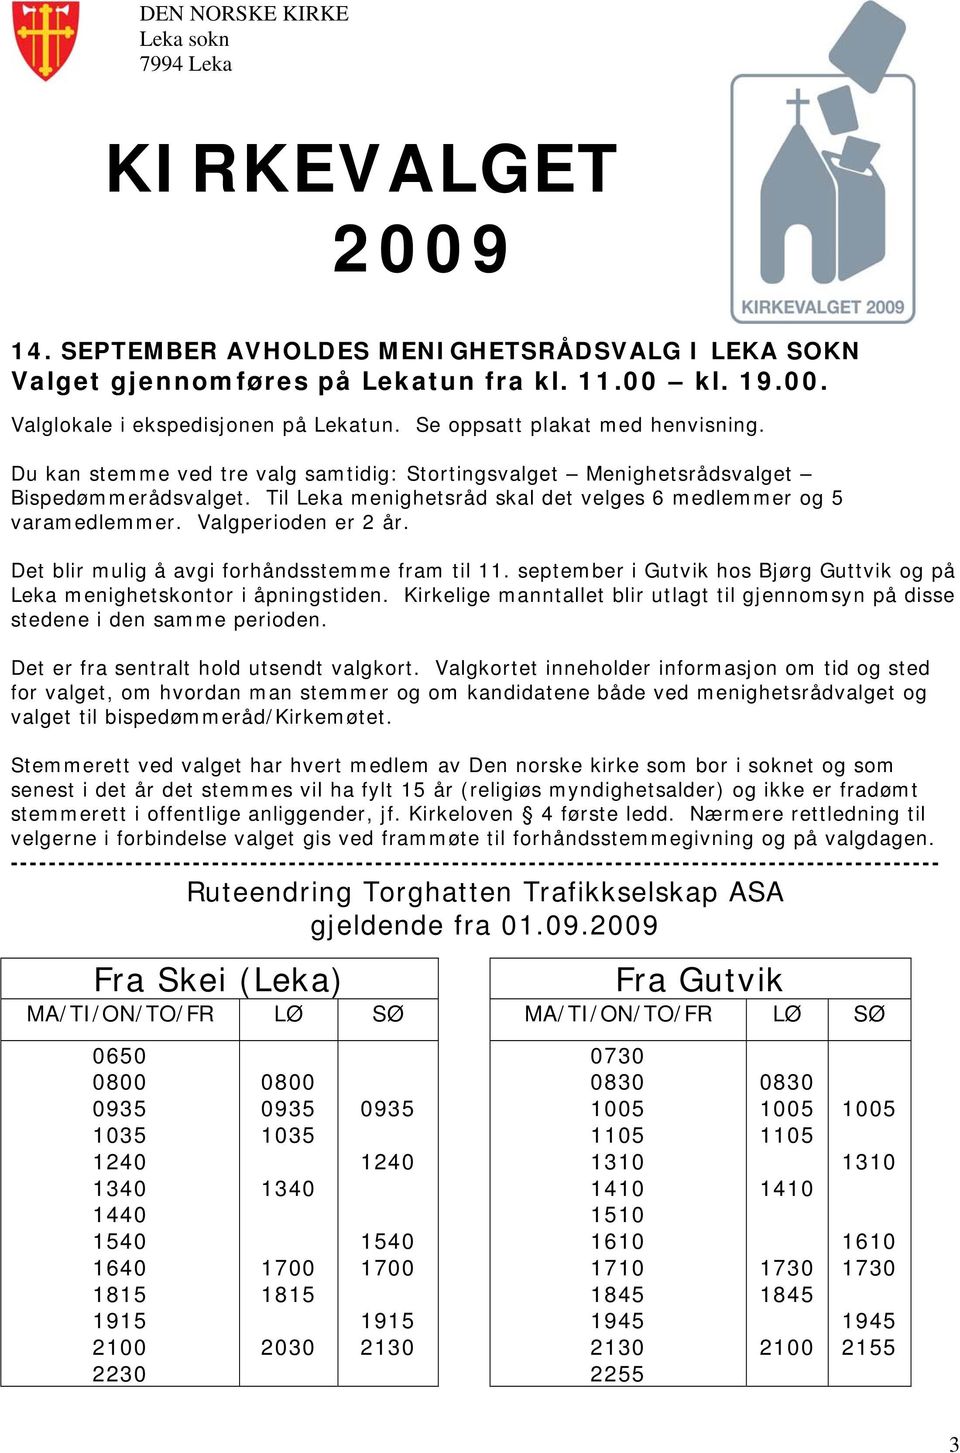 Valgperioden er 2 år. Det blir mulig å avgi forhåndsstemme fram til 11. september i Gutvik hos Bjørg Guttvik og på Leka menighetskontor i åpningstiden.